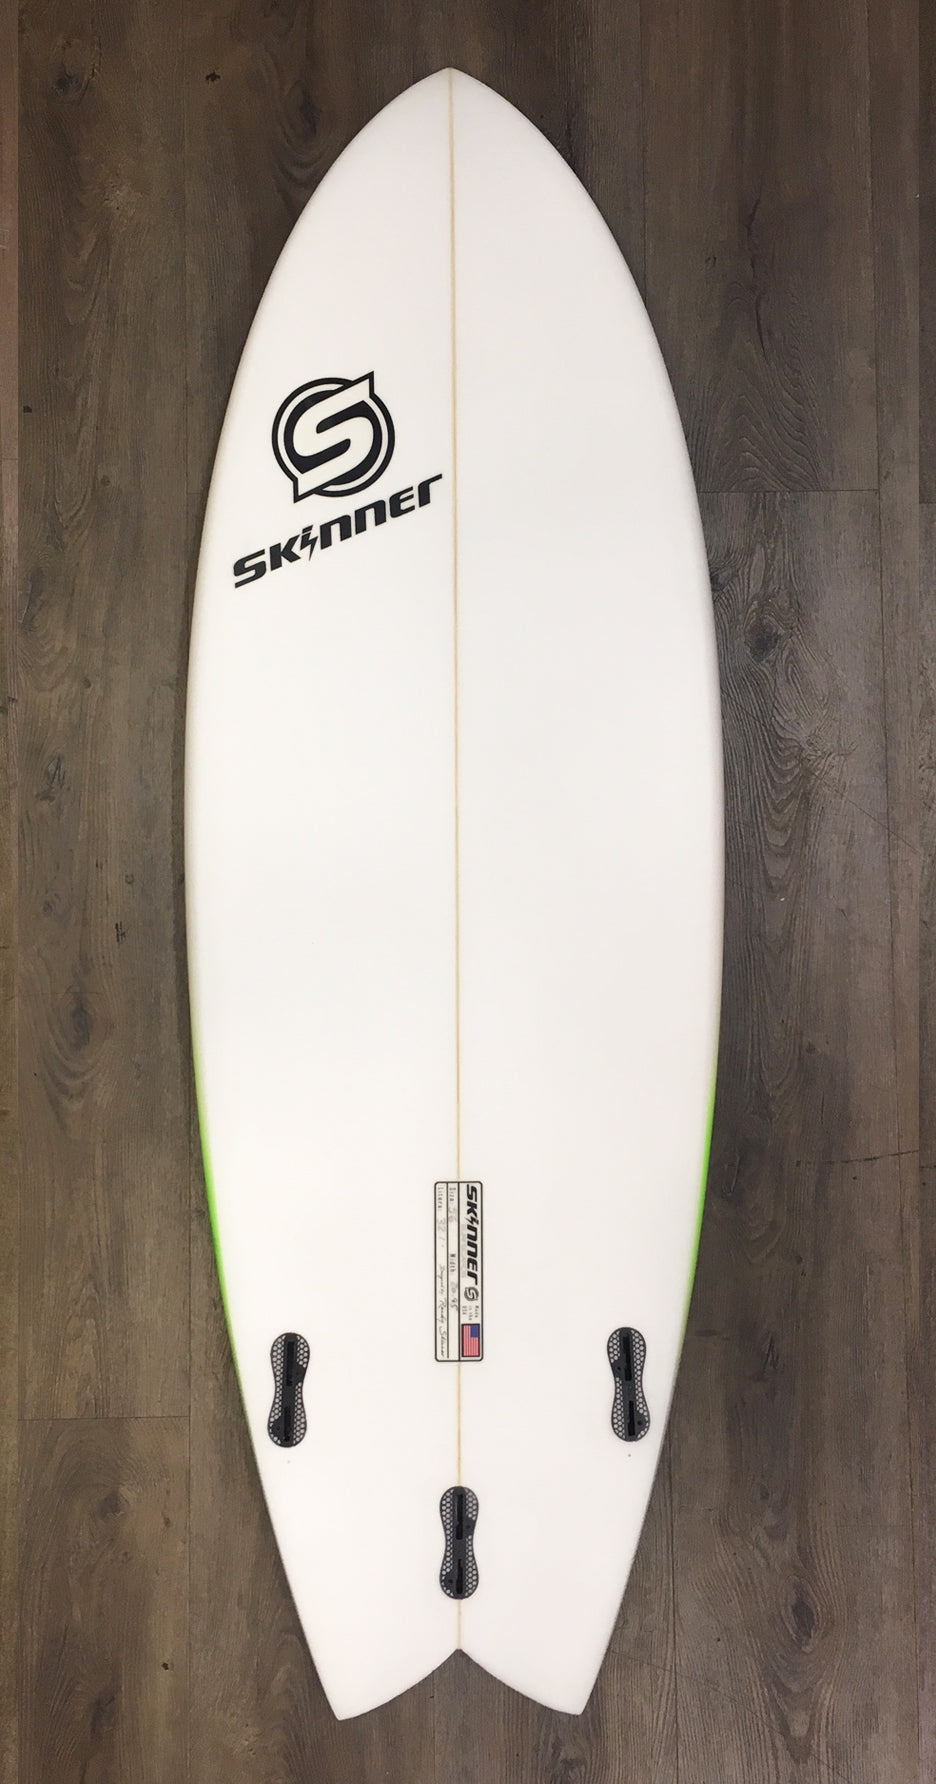 SOLD Skinner 5'6 x 20.9" x 32.1 Liters Twin + Swallow Tail EPS Epoxy Surfboard Surfboard